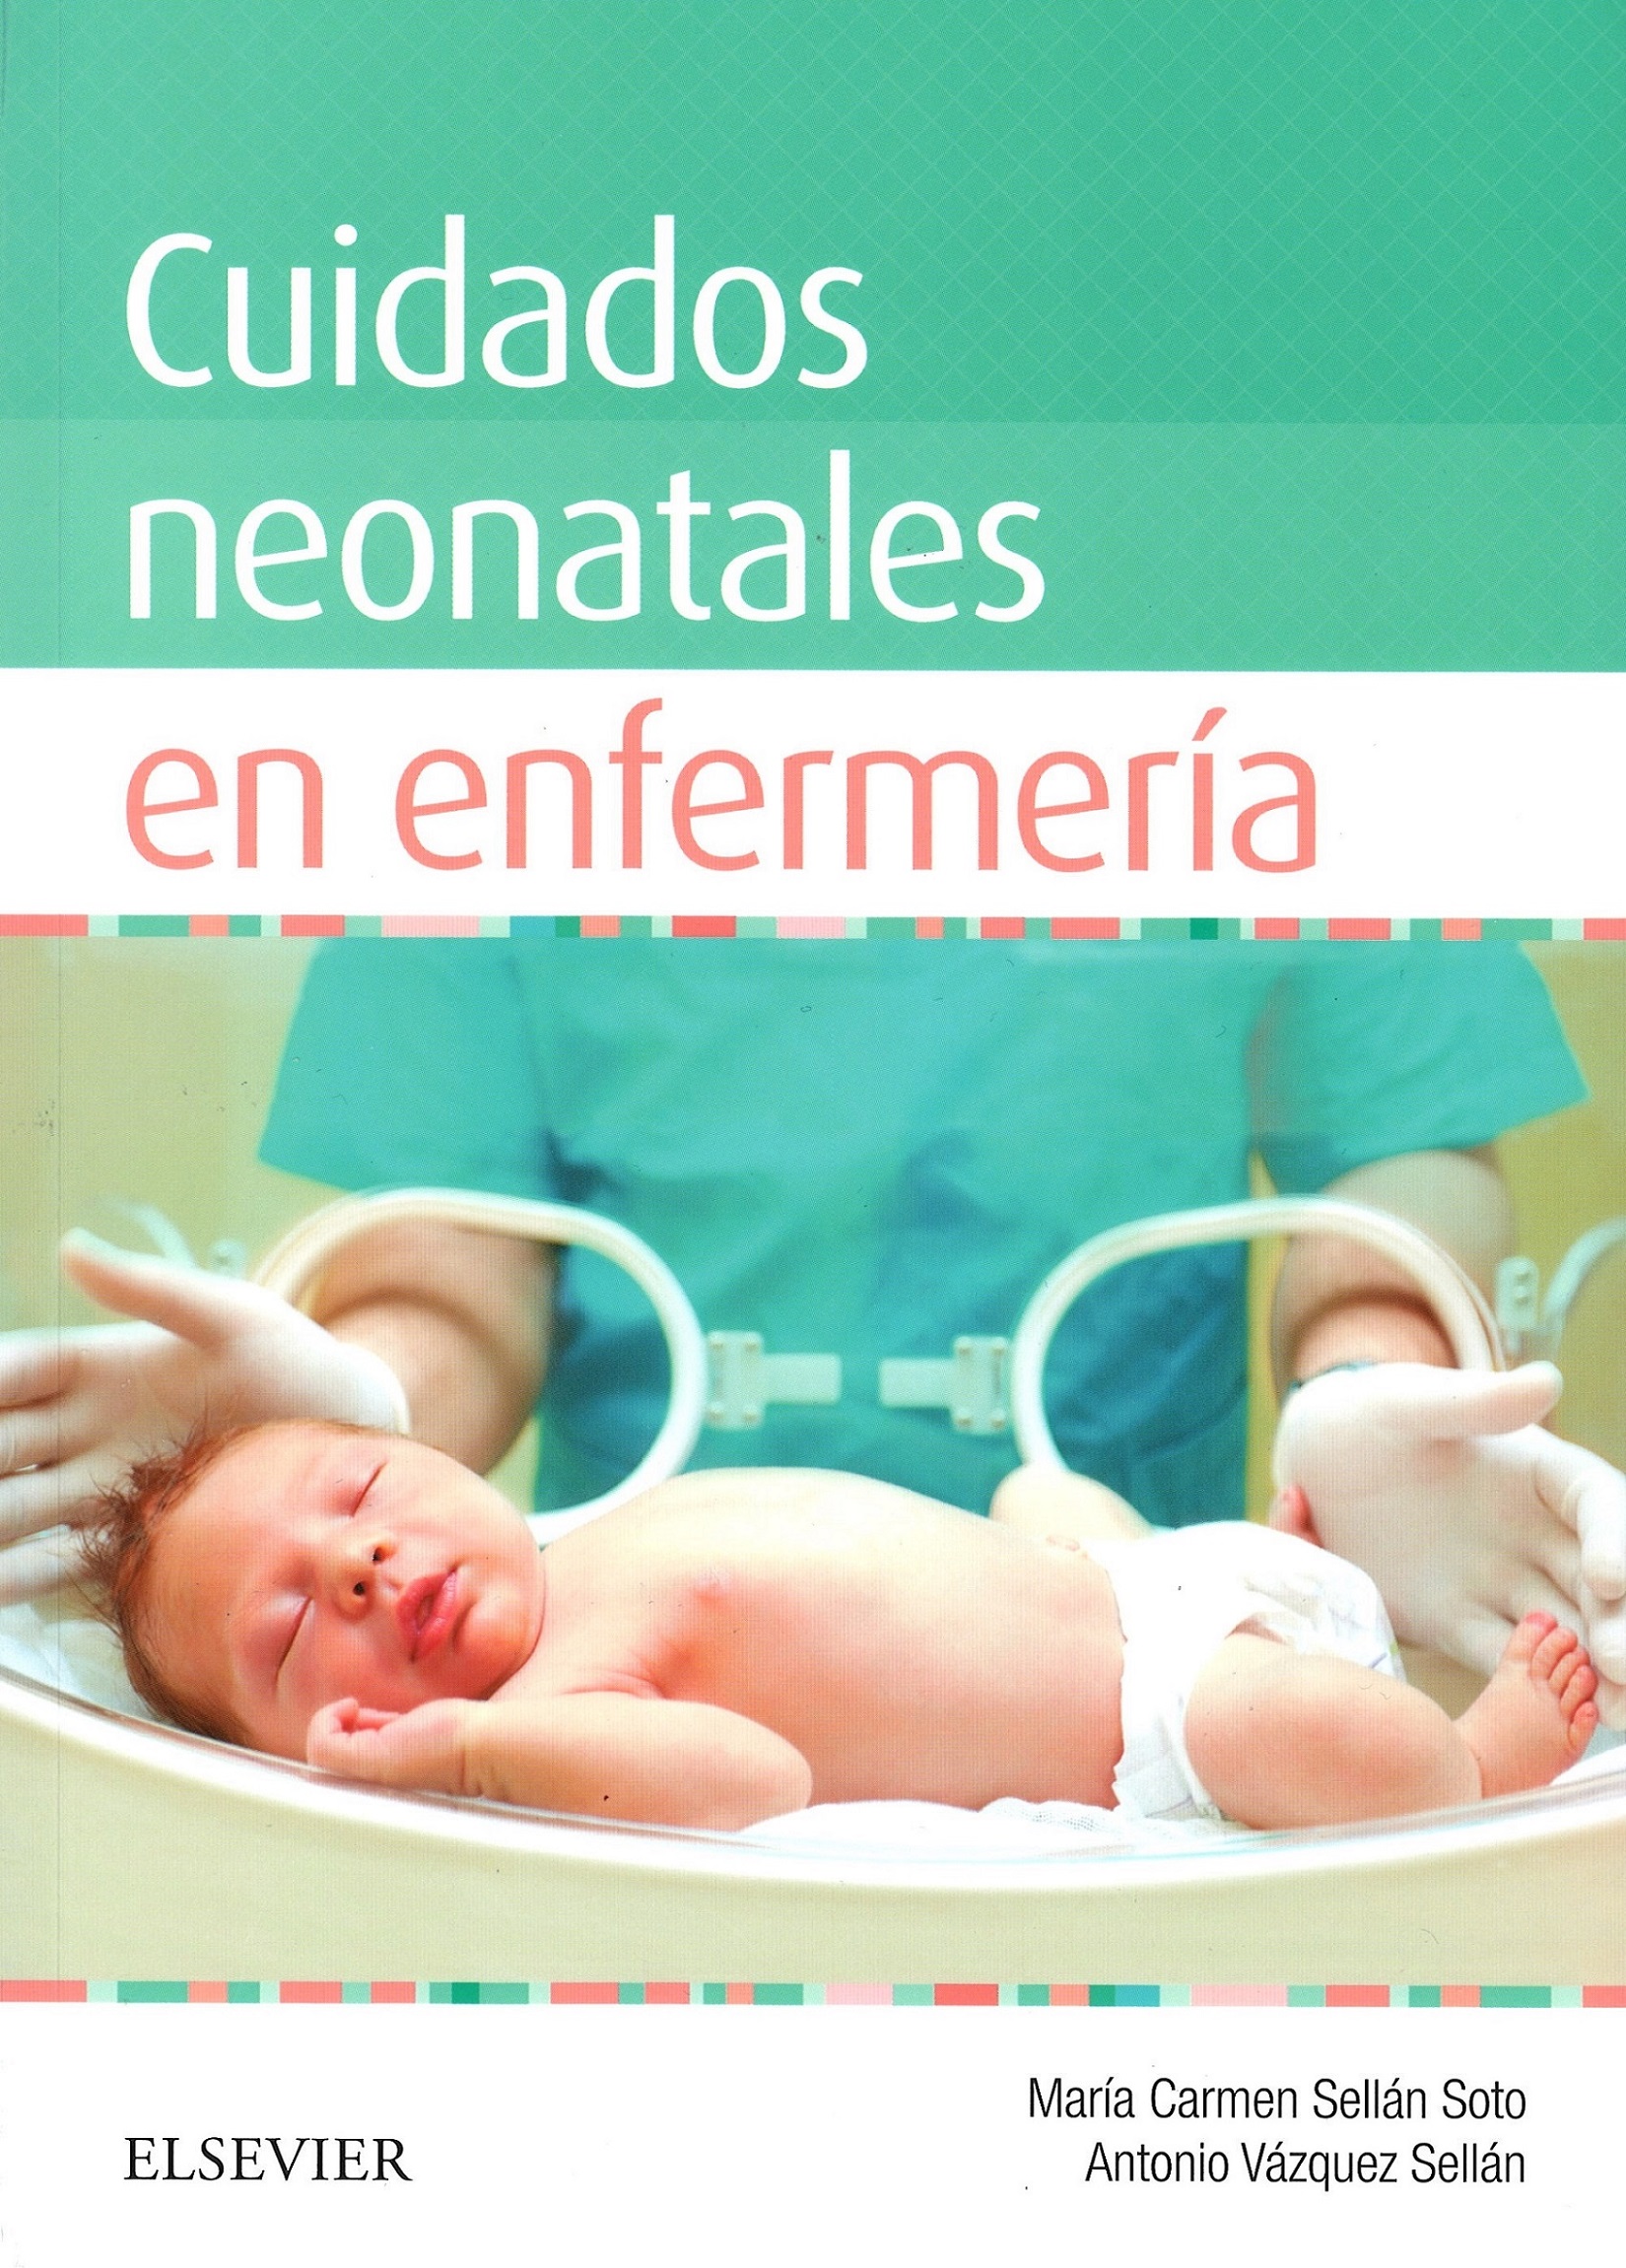 Imagen de portada del libro Cuidados neonatales en enfermería